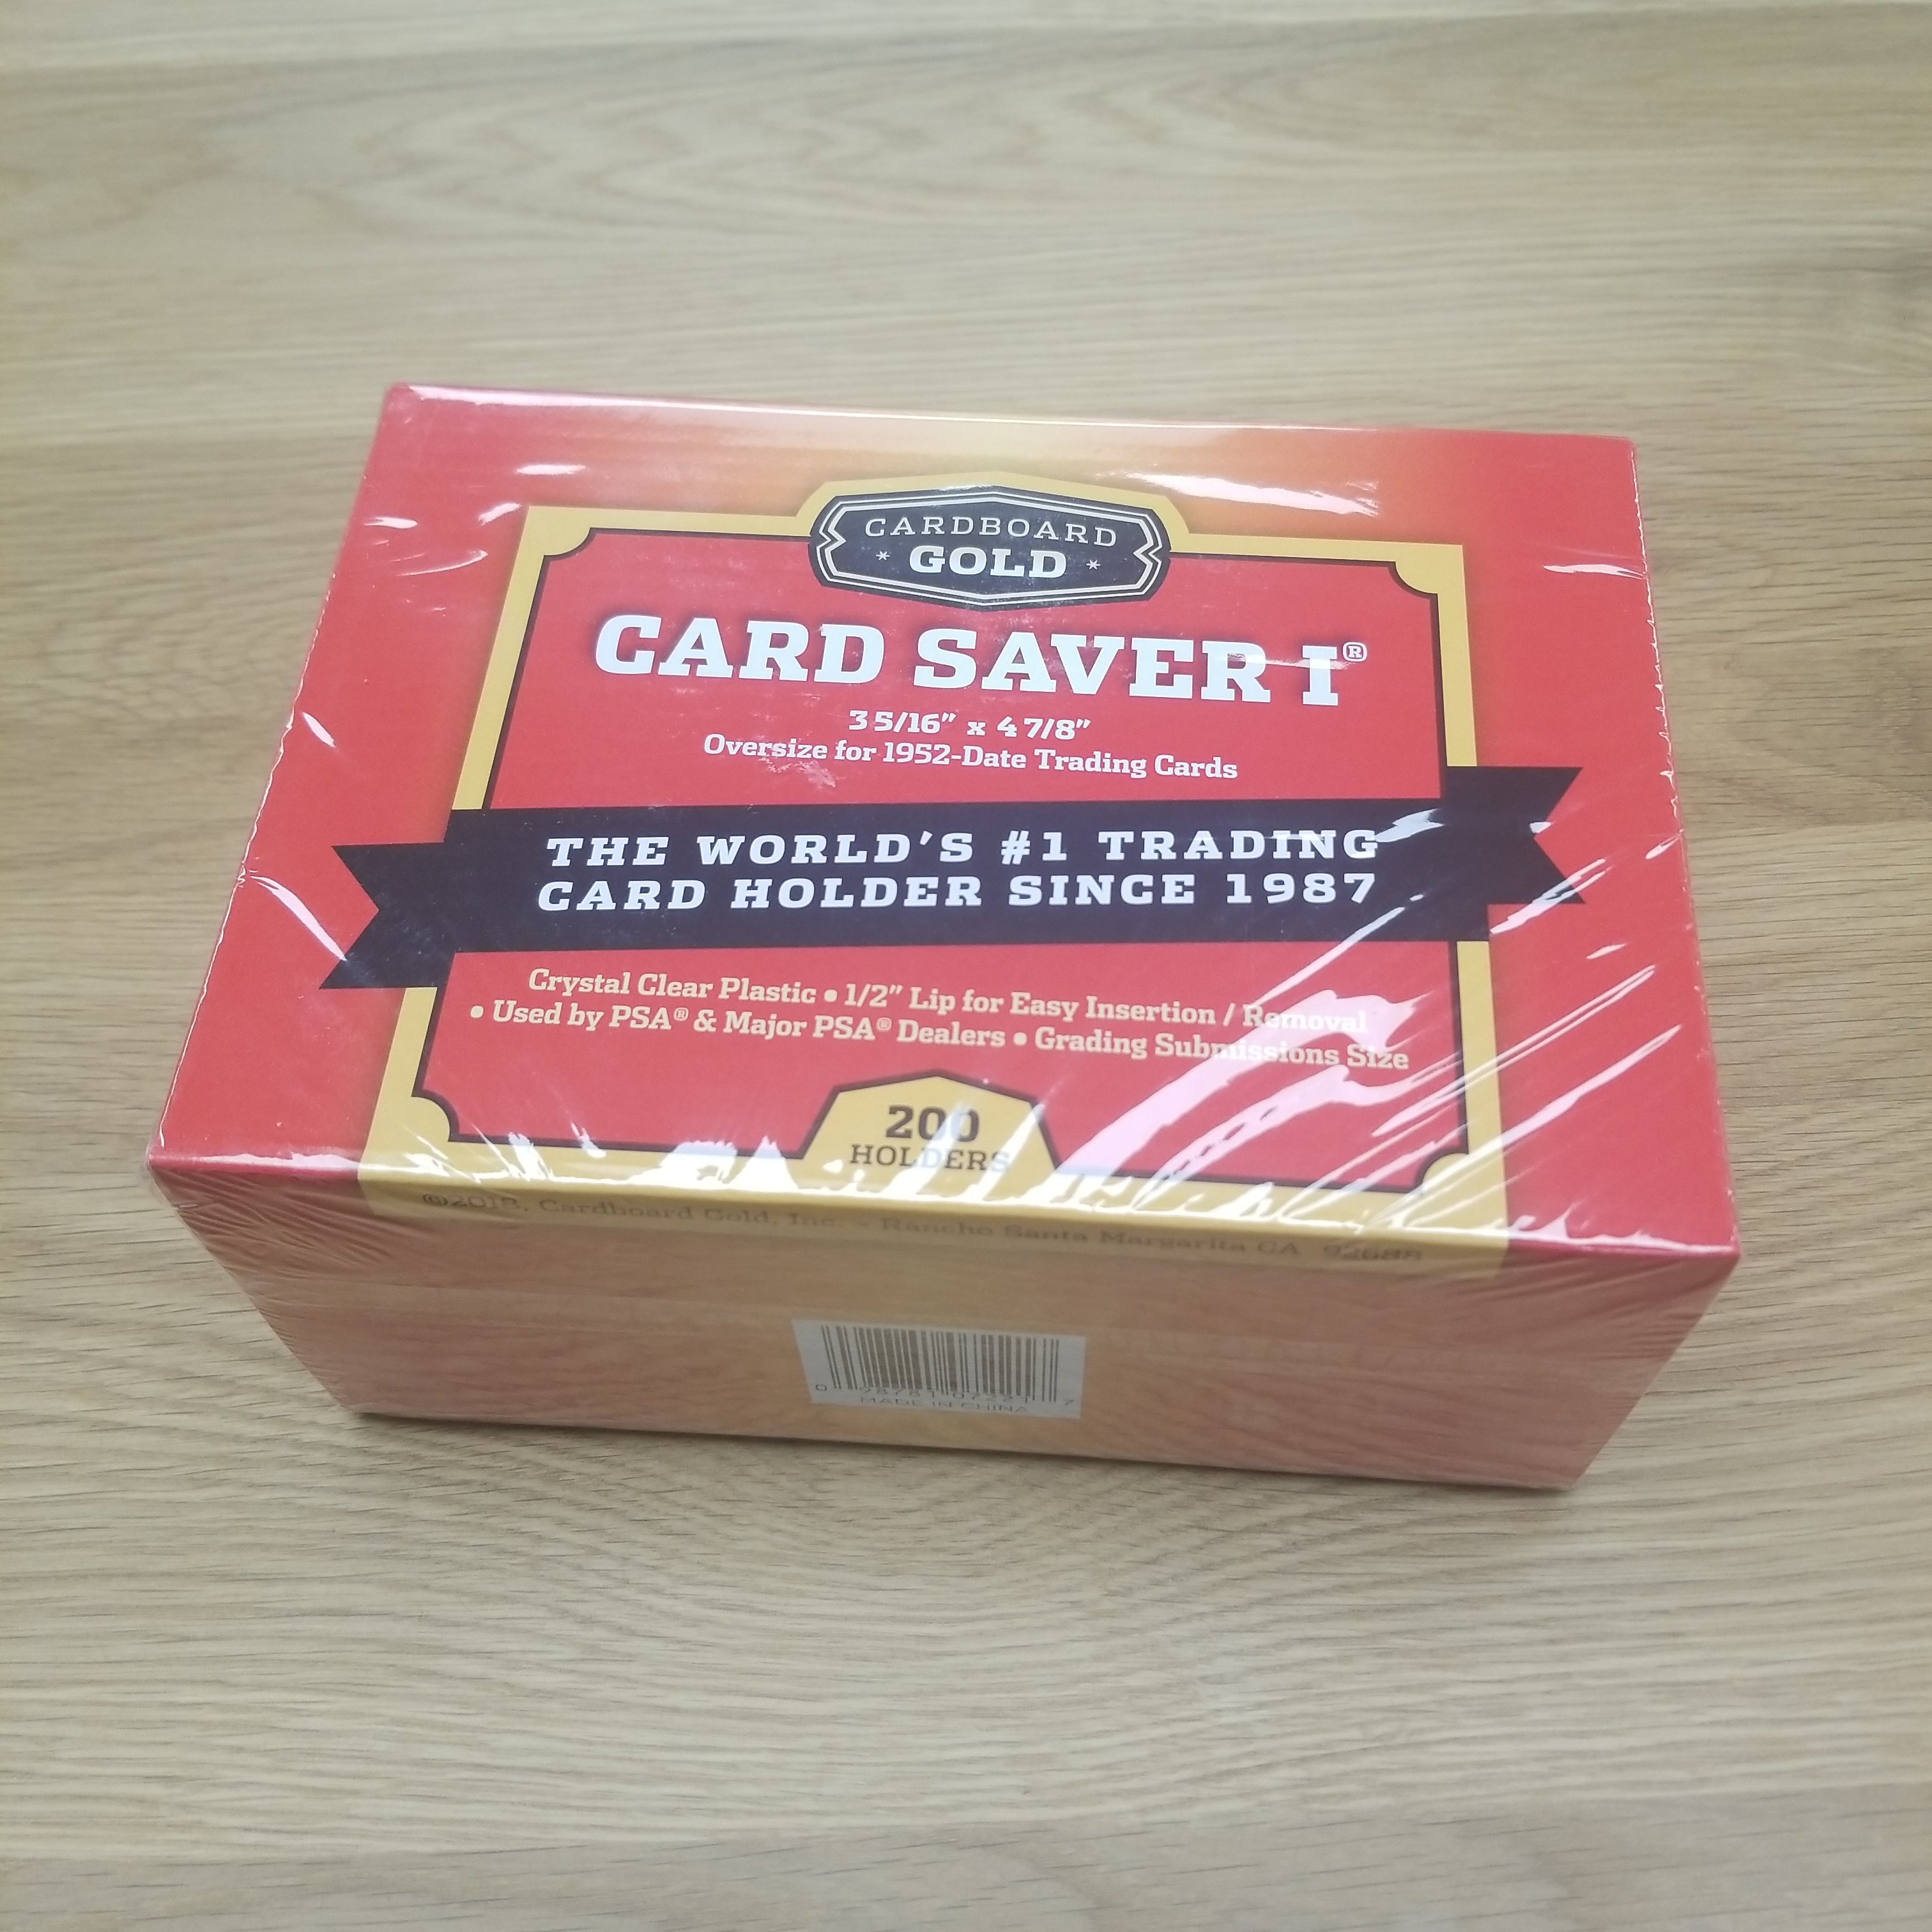 Cardboard Gold Card Saver 1 Semi